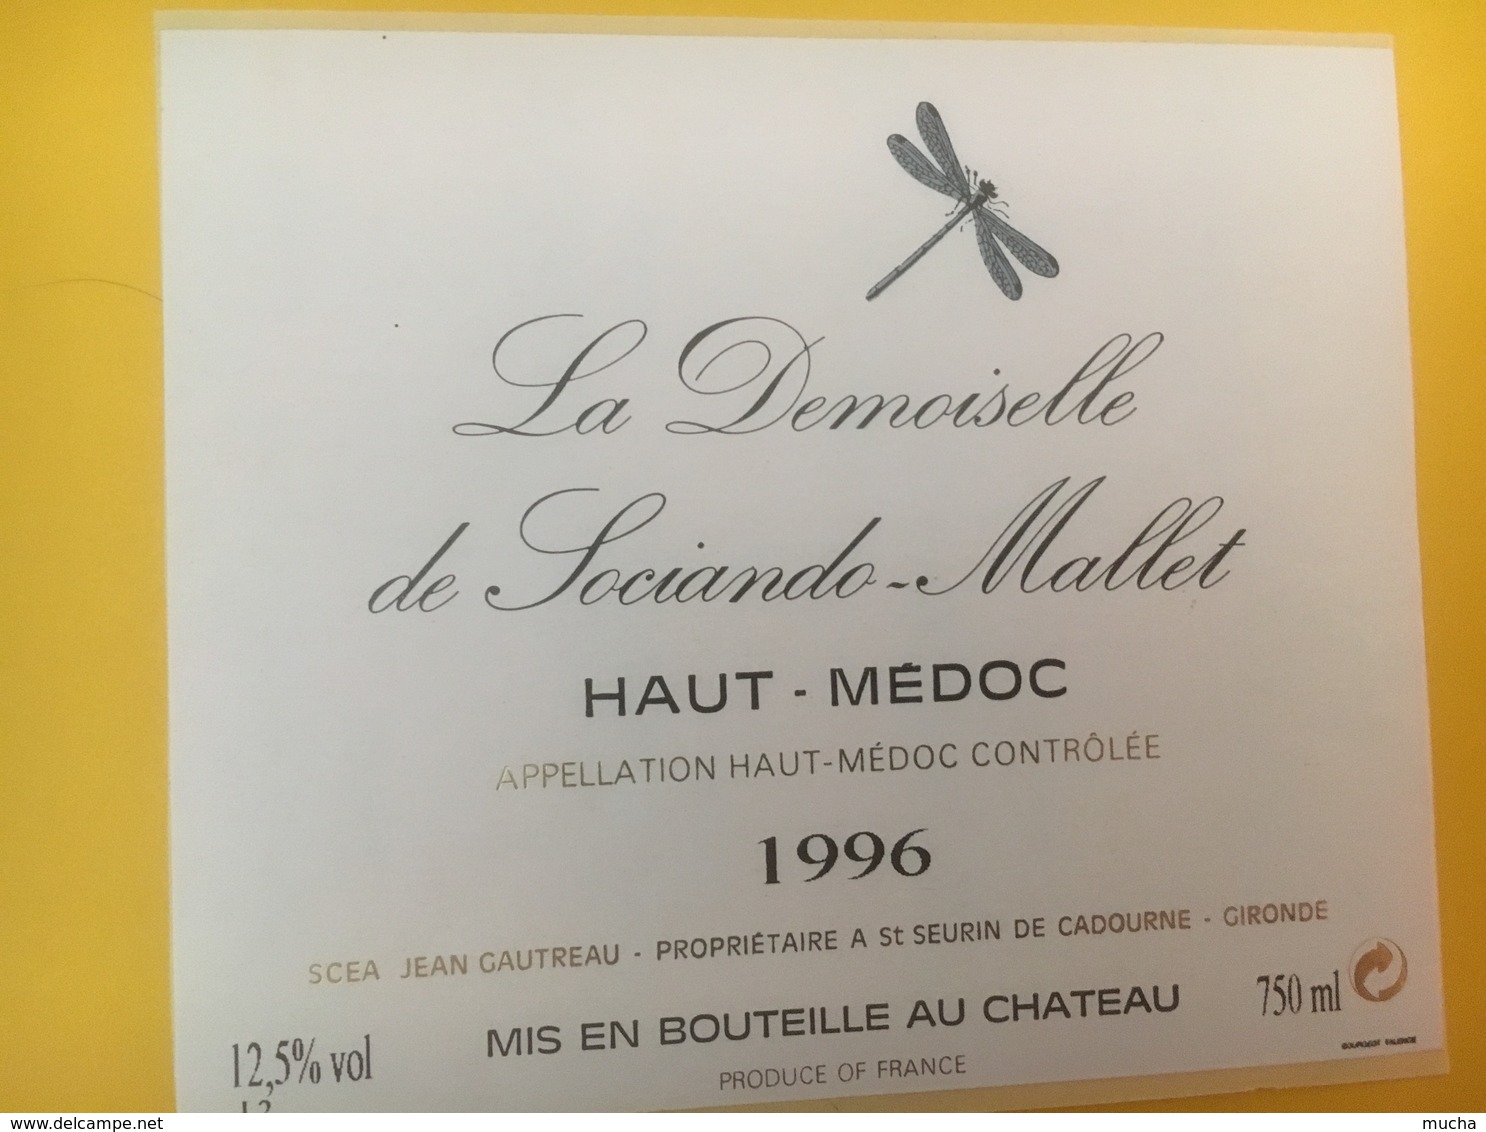 8317 - La Demoiselle De Sociandre-Mallet 1996 Haut-Médoc - Bordeaux